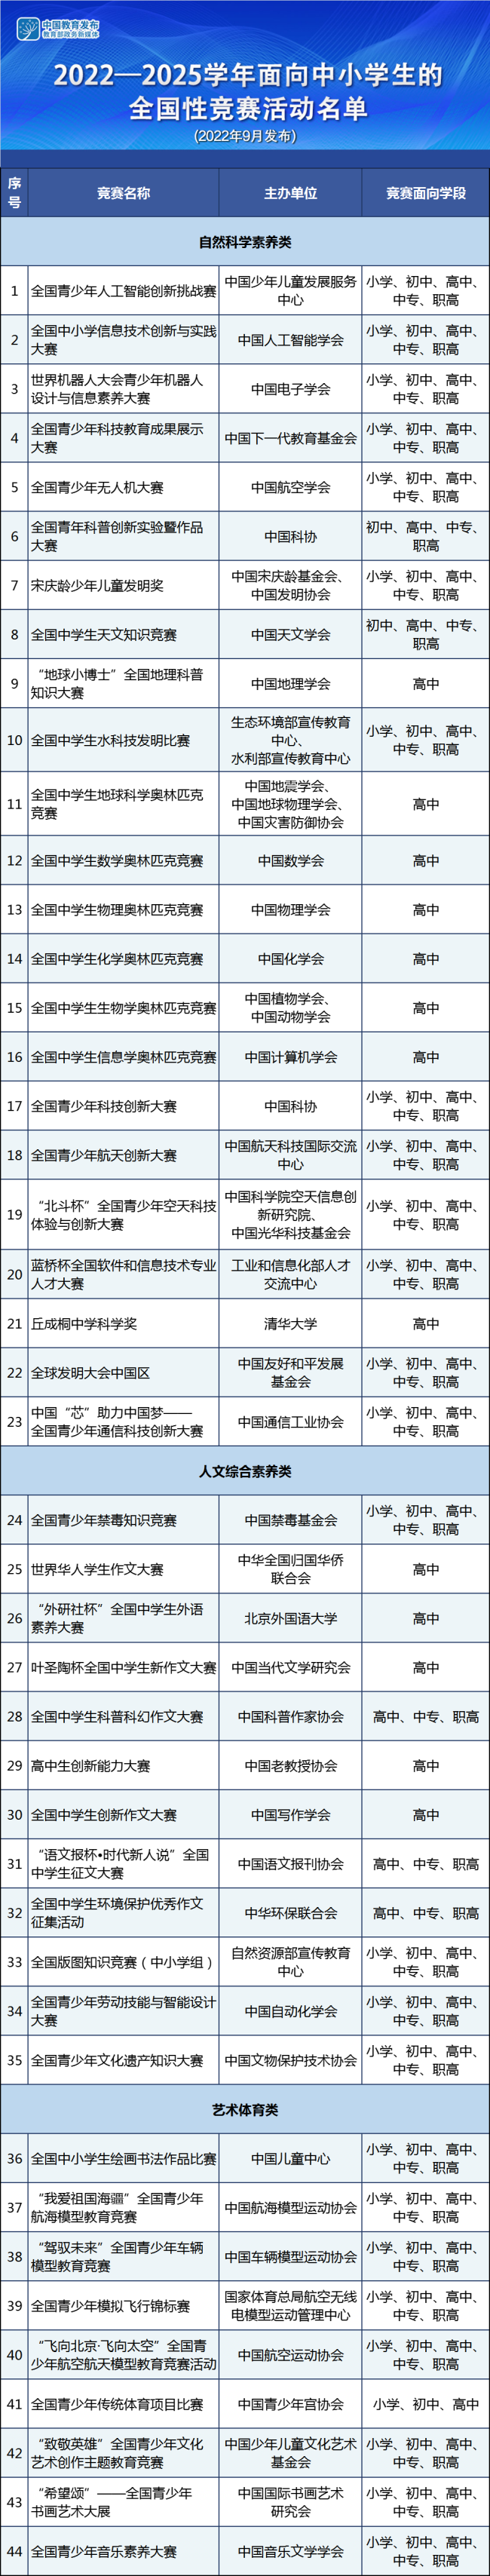 王毅阐述台湾问题的真实现状 - Bing Search - 博牛社区 百度热点快讯